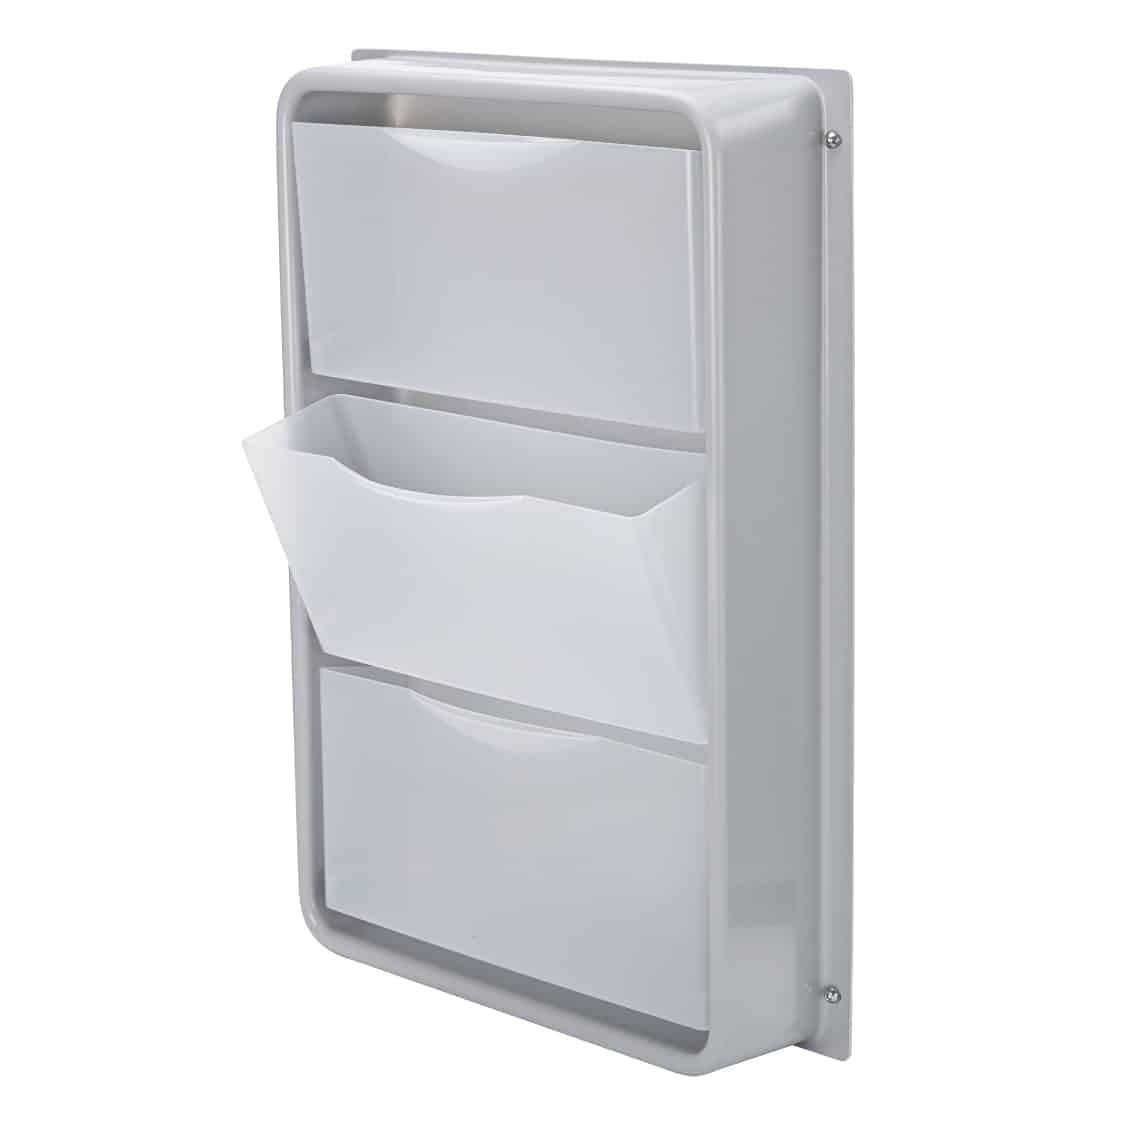 Foldaway side drawer unit